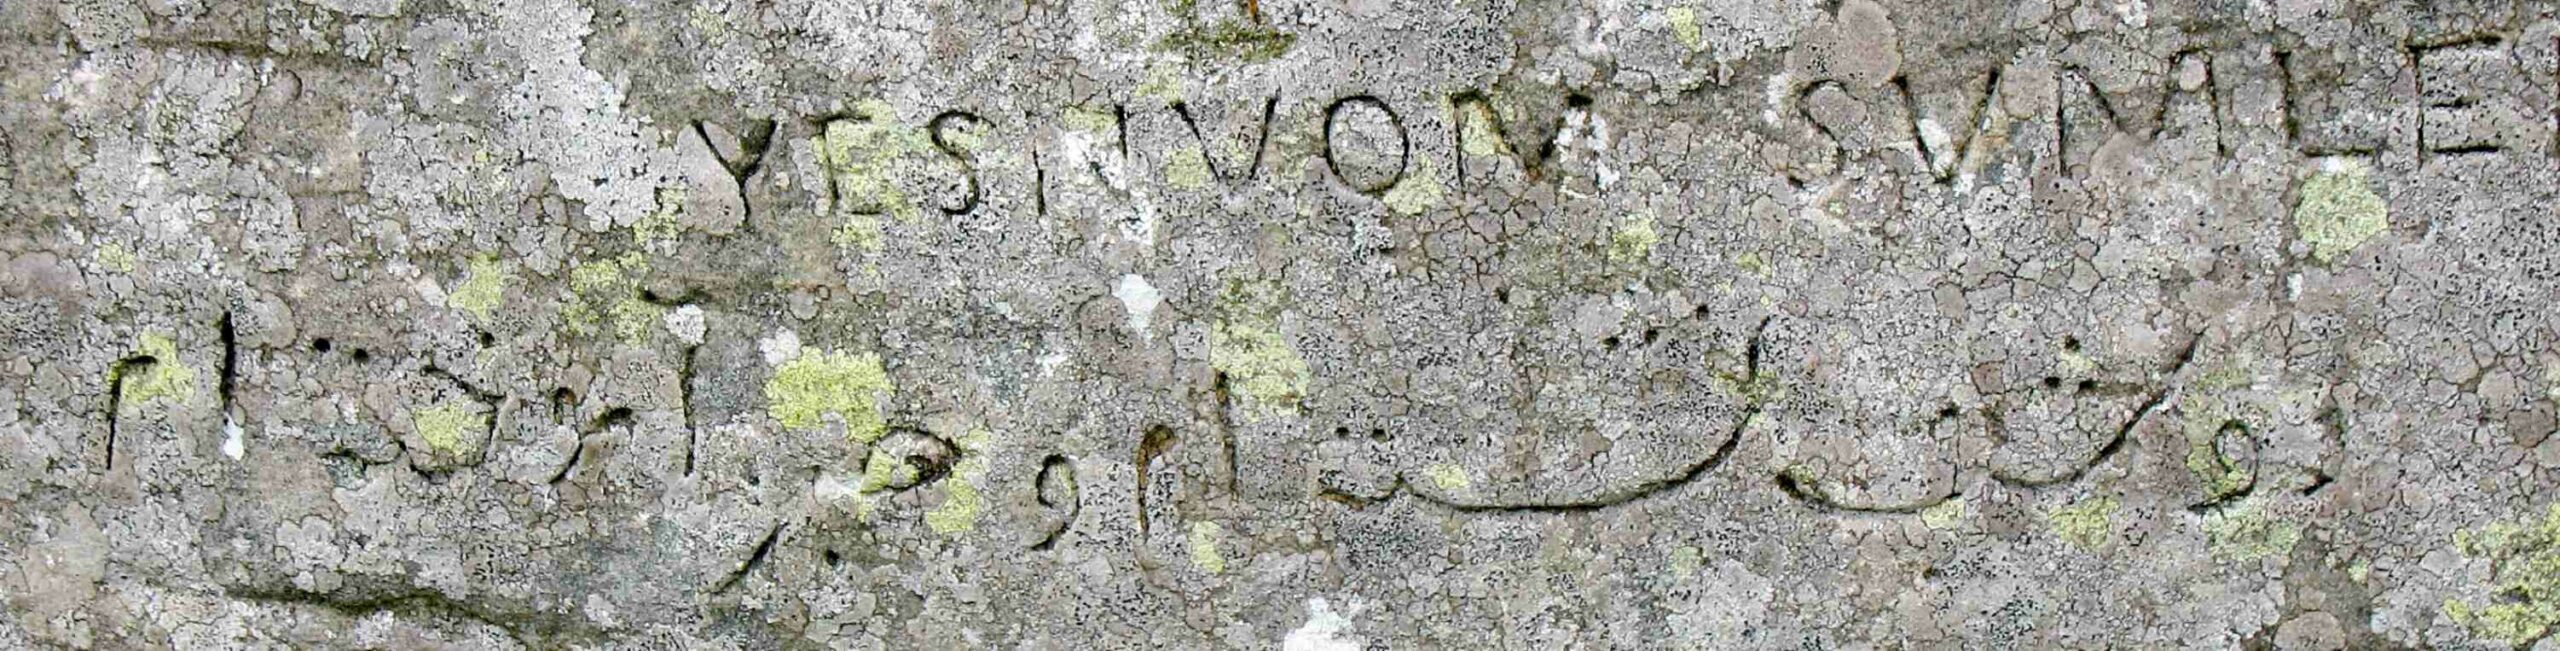 Esta é uma inscrição em caligrafia persa no Dwarfie Stane. Foi deixado pelo capitão William Henry Mounsey de Castletown e Rockcliffe, que acampou aqui em 1850, e diz: "Passei duas noites sentado e aprendi a ter paciência". Acima do persa está seu nome escrito ao contrário em latim.